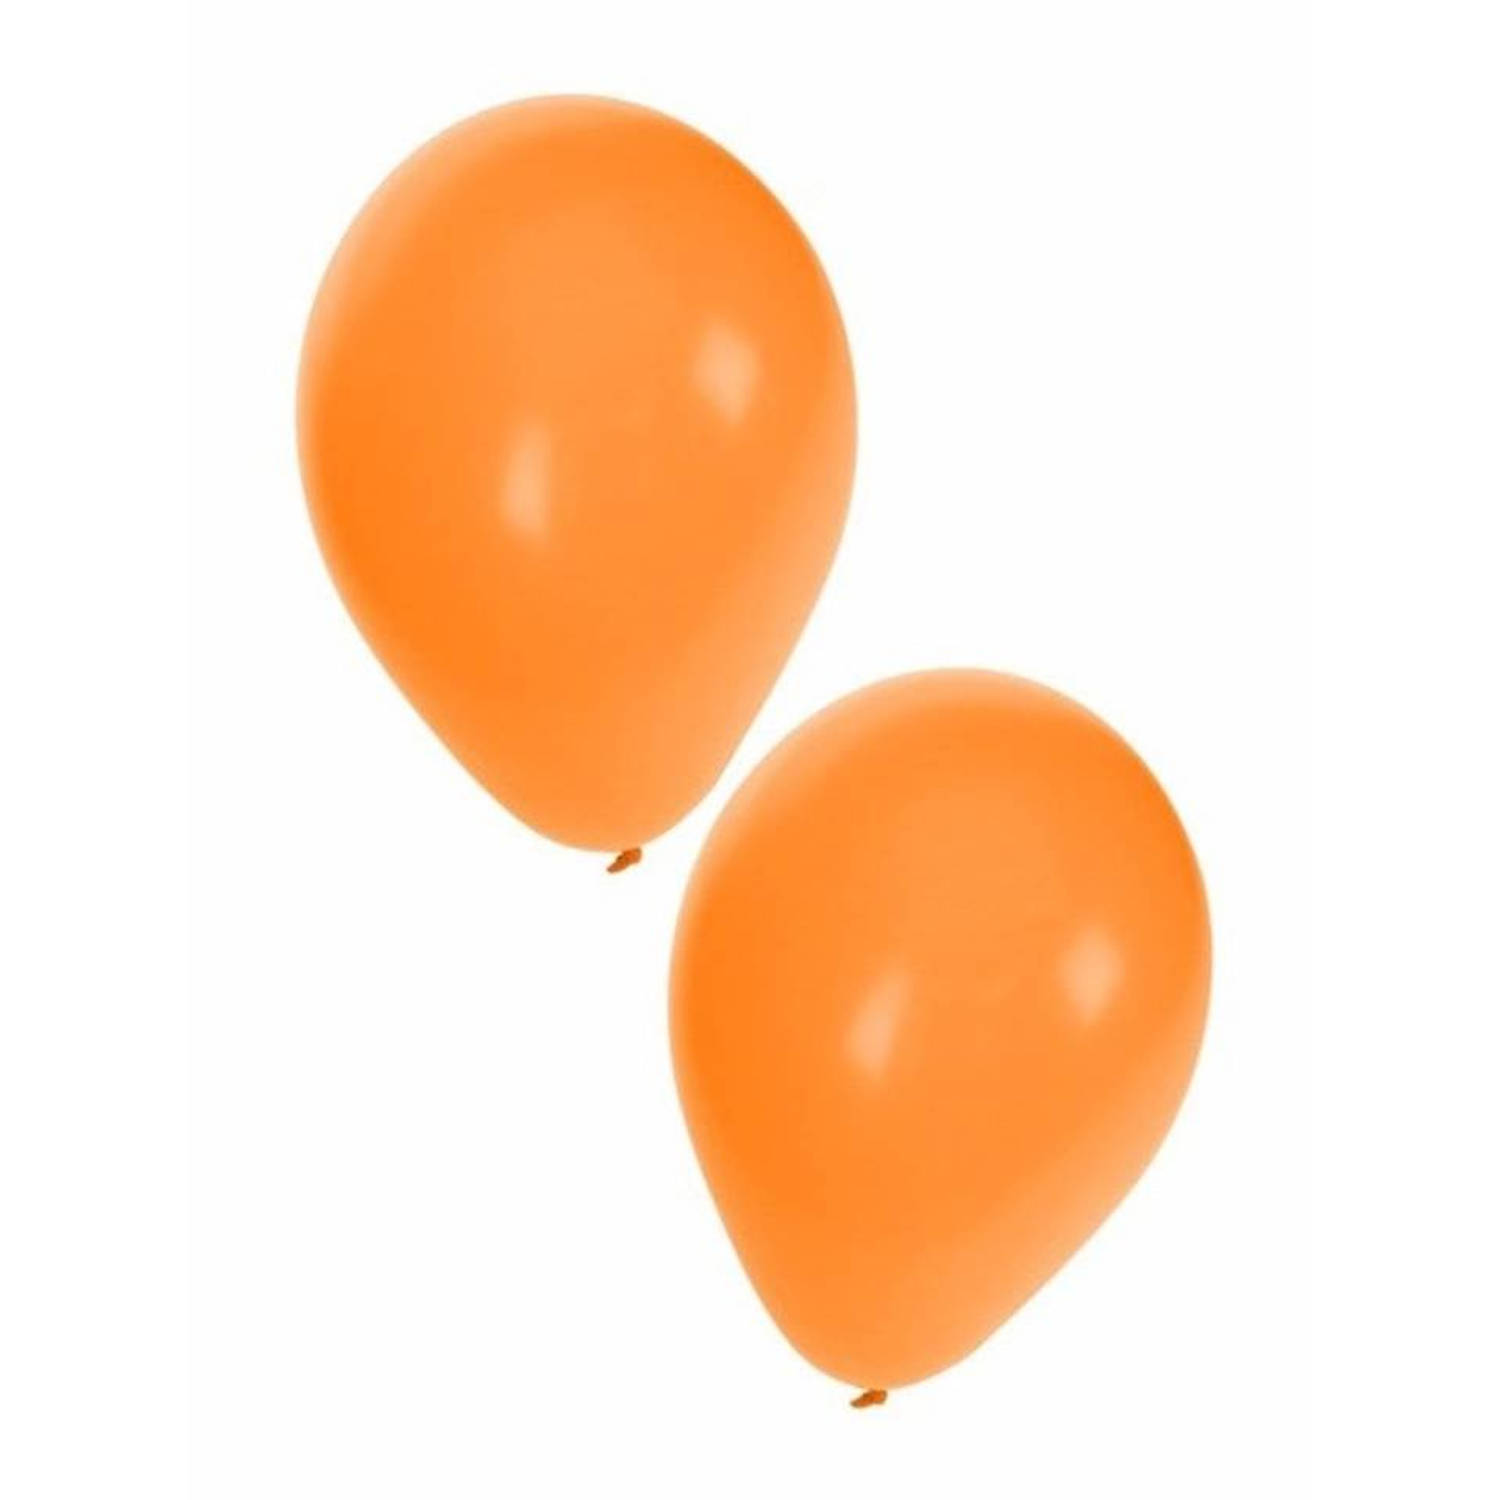 Door Leuk vinden conservatief Oranje ballonnen 100 stuks - Ballonnen | Blokker